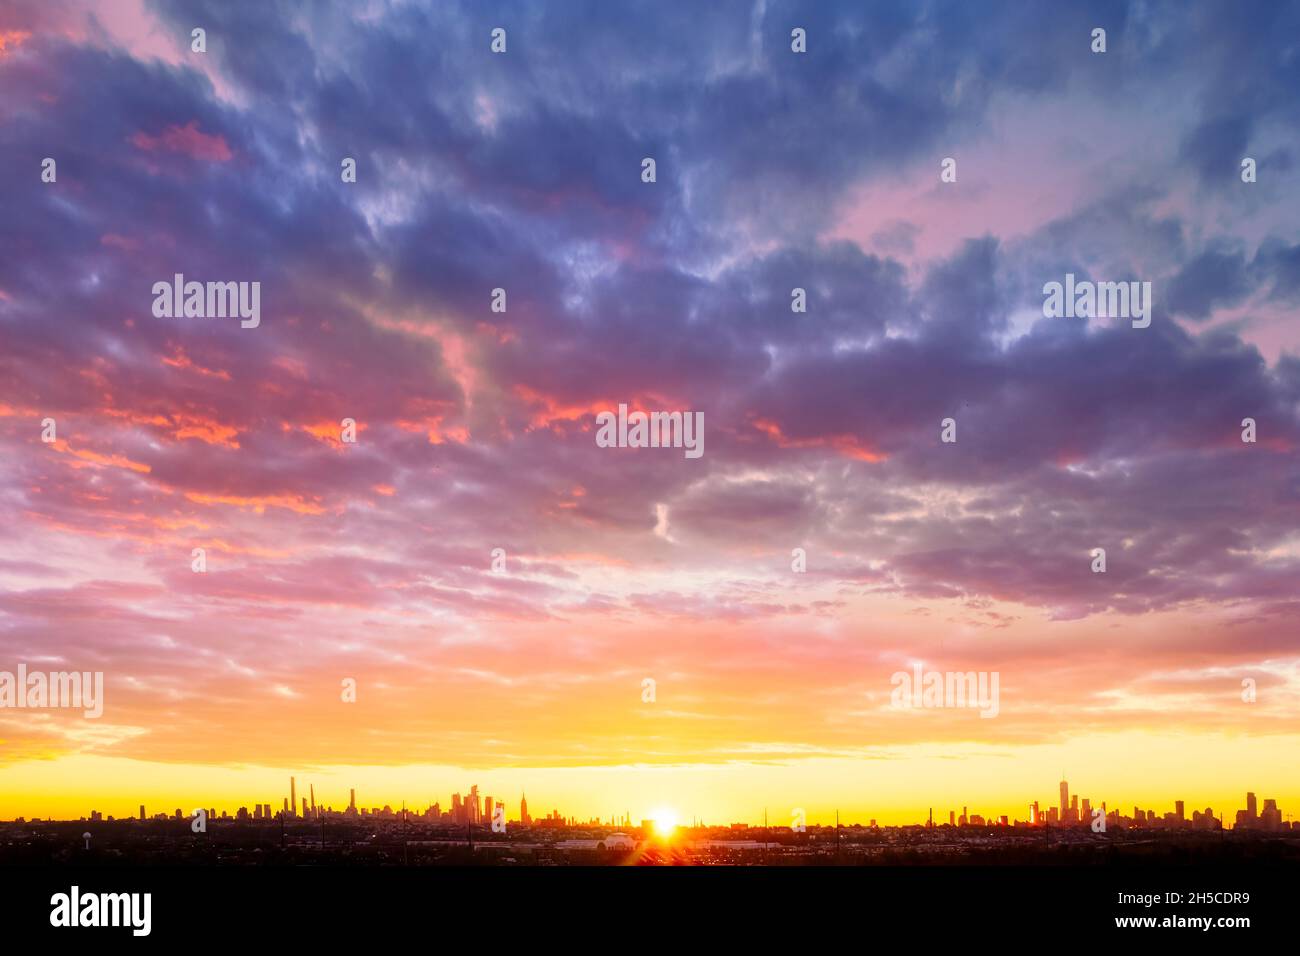 Aereo NYC Skyline Sunrise - il sole sorge a Midtowm Manhattan con una vista aerea superiore dello skyline da Uptown al centro di New York City. Questa immagine Foto Stock